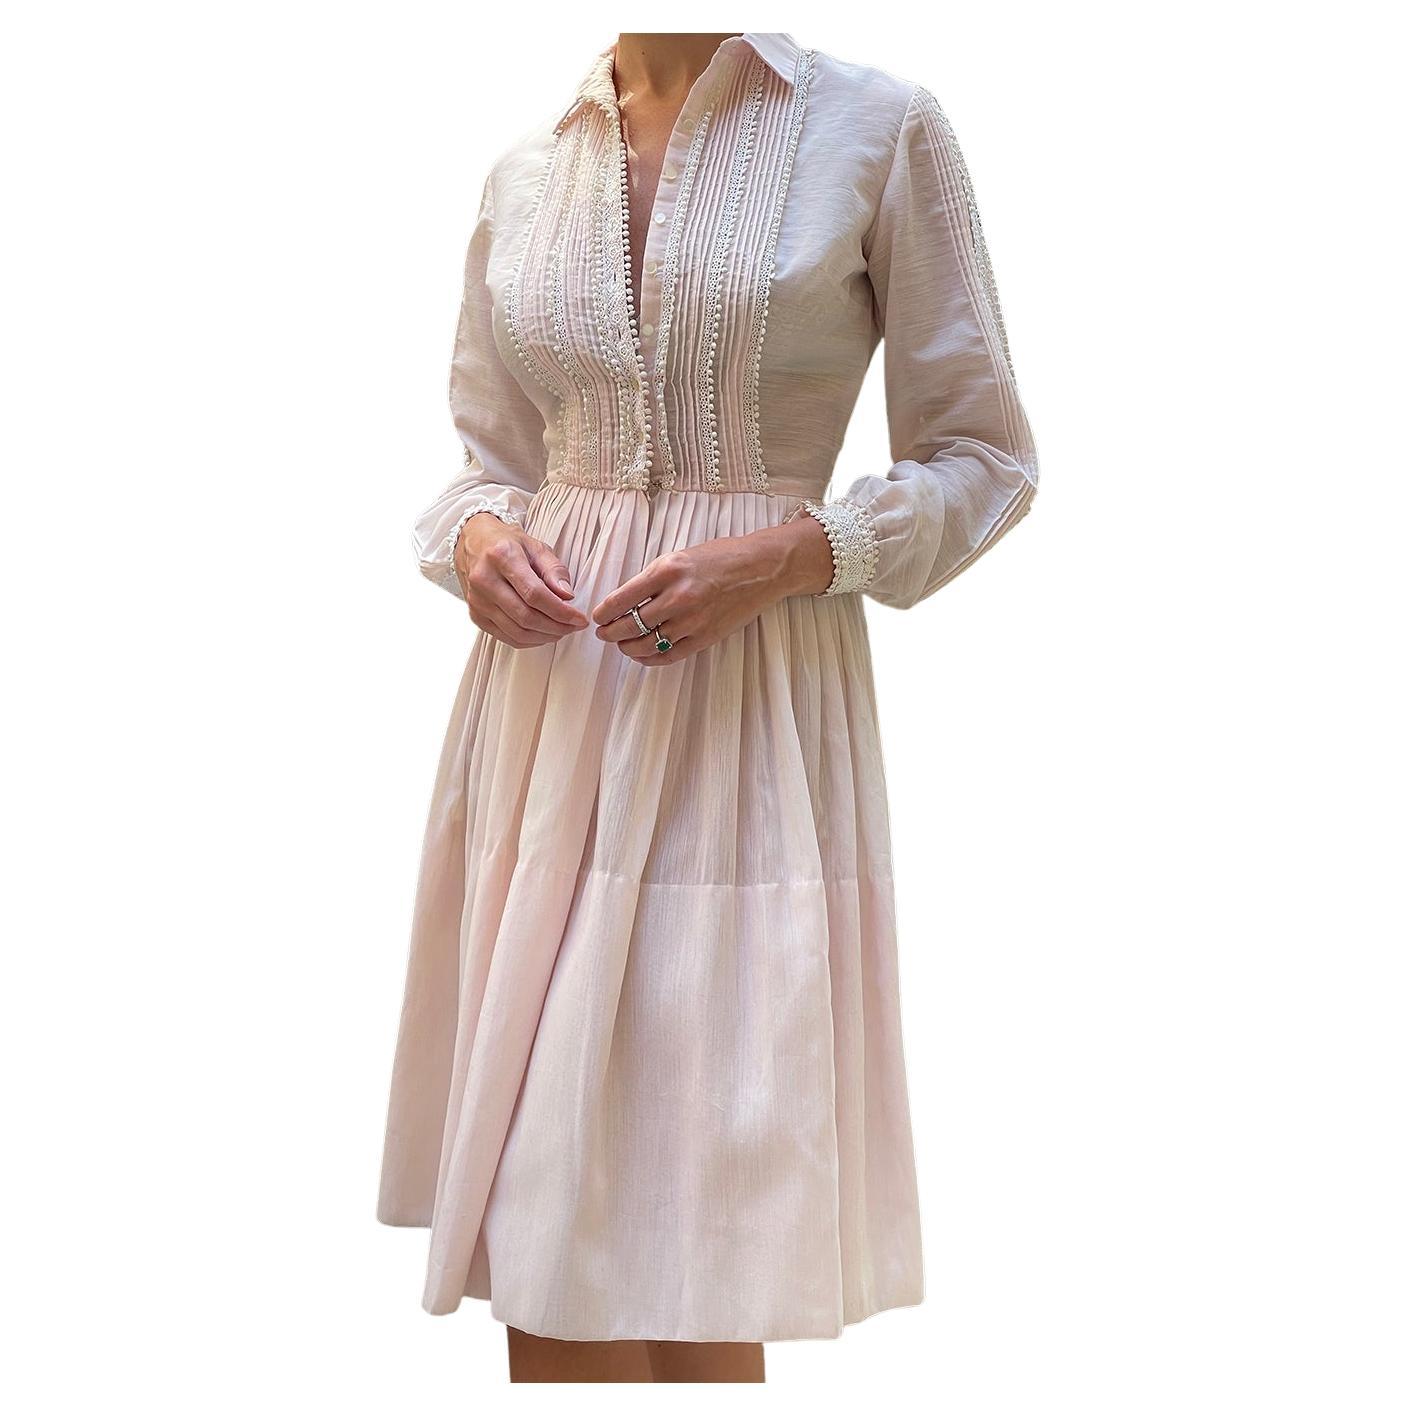  Vintage 1950s Shirtwaist Dress by L'AIGLON For Sale